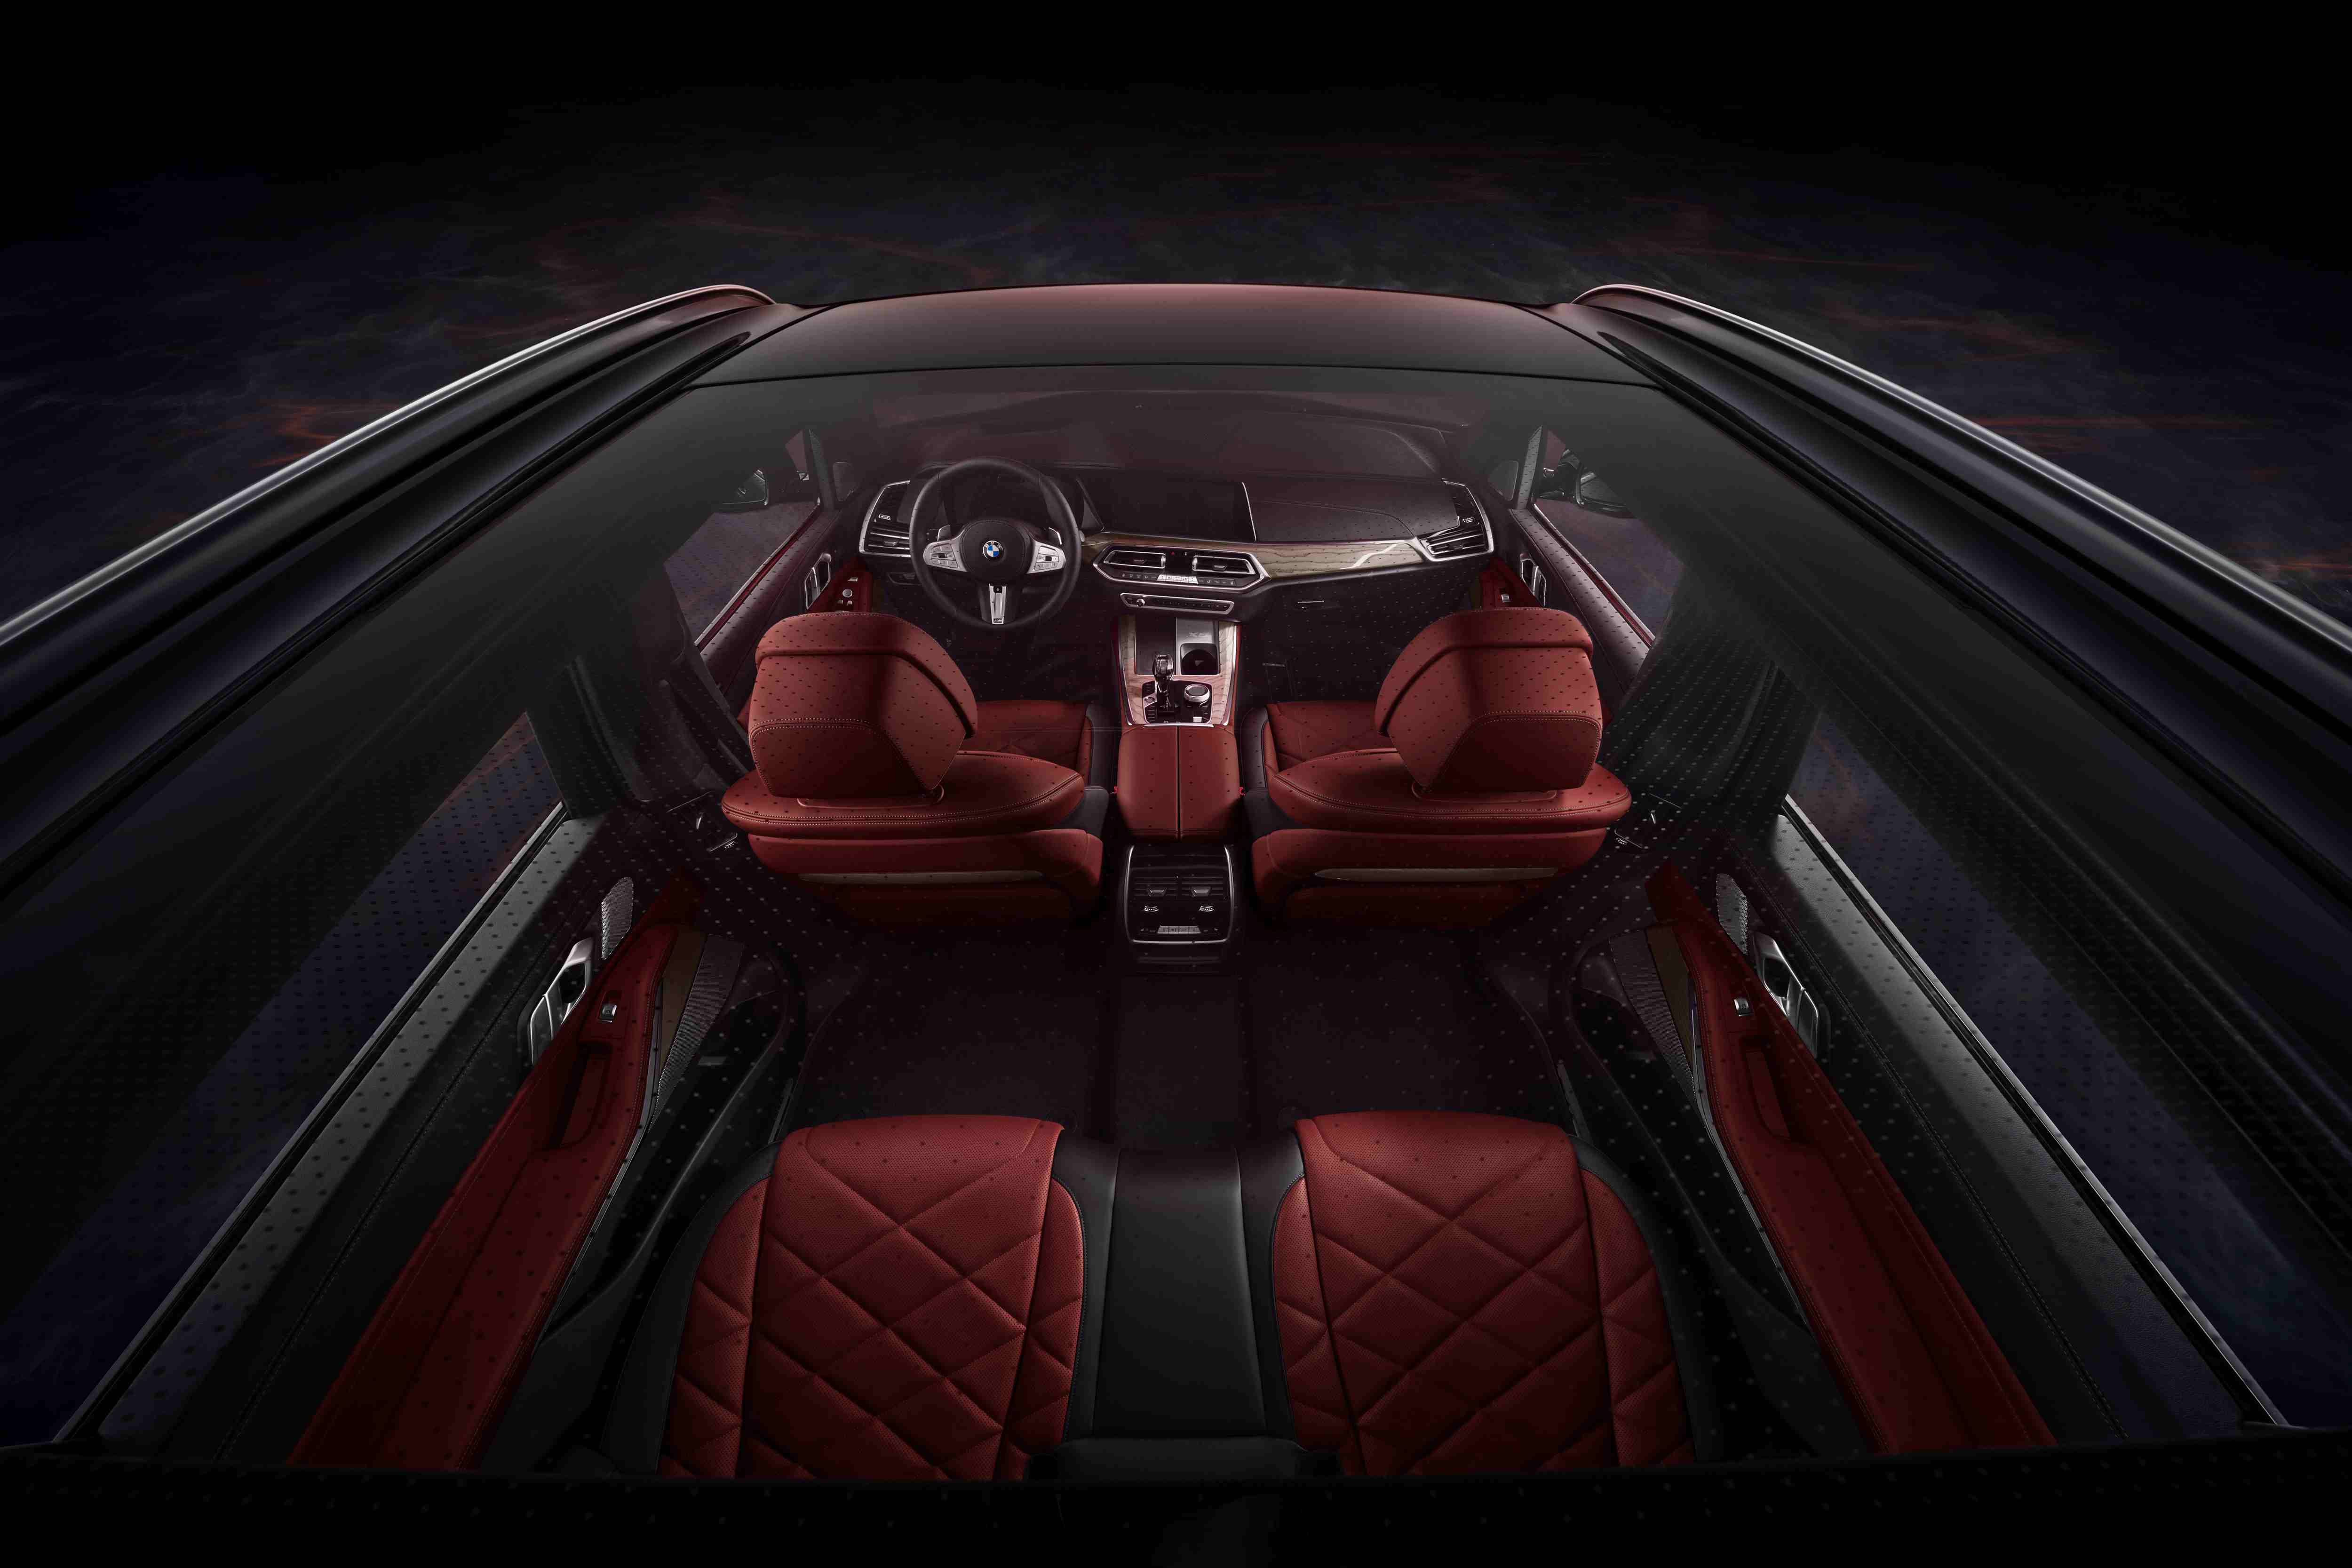 创新 设计 | 全新BMW X5携15项豪华标准配置震撼上市